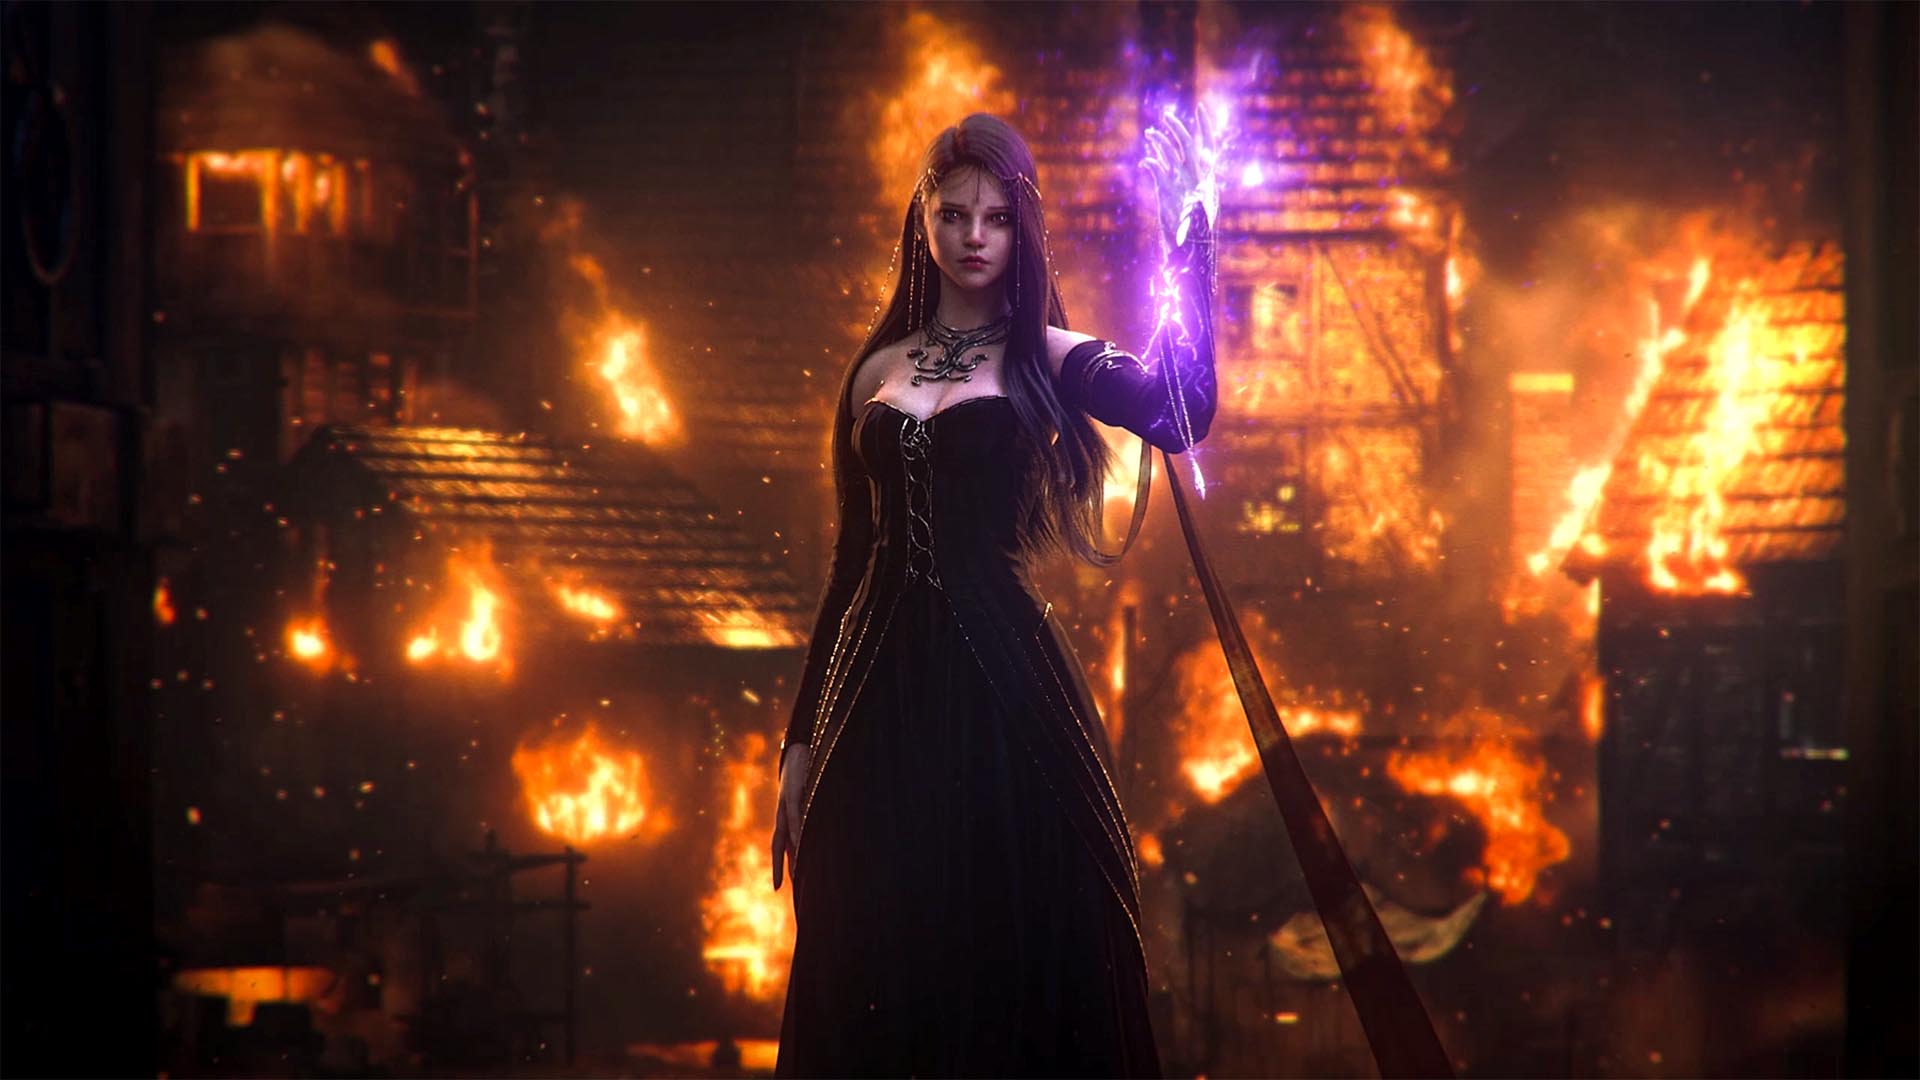 Le personnage de Calanthia debout dans une robe noire, avec de longs cheveux noirs, sa main émet une lumière violette, une ville brûle derrière elle